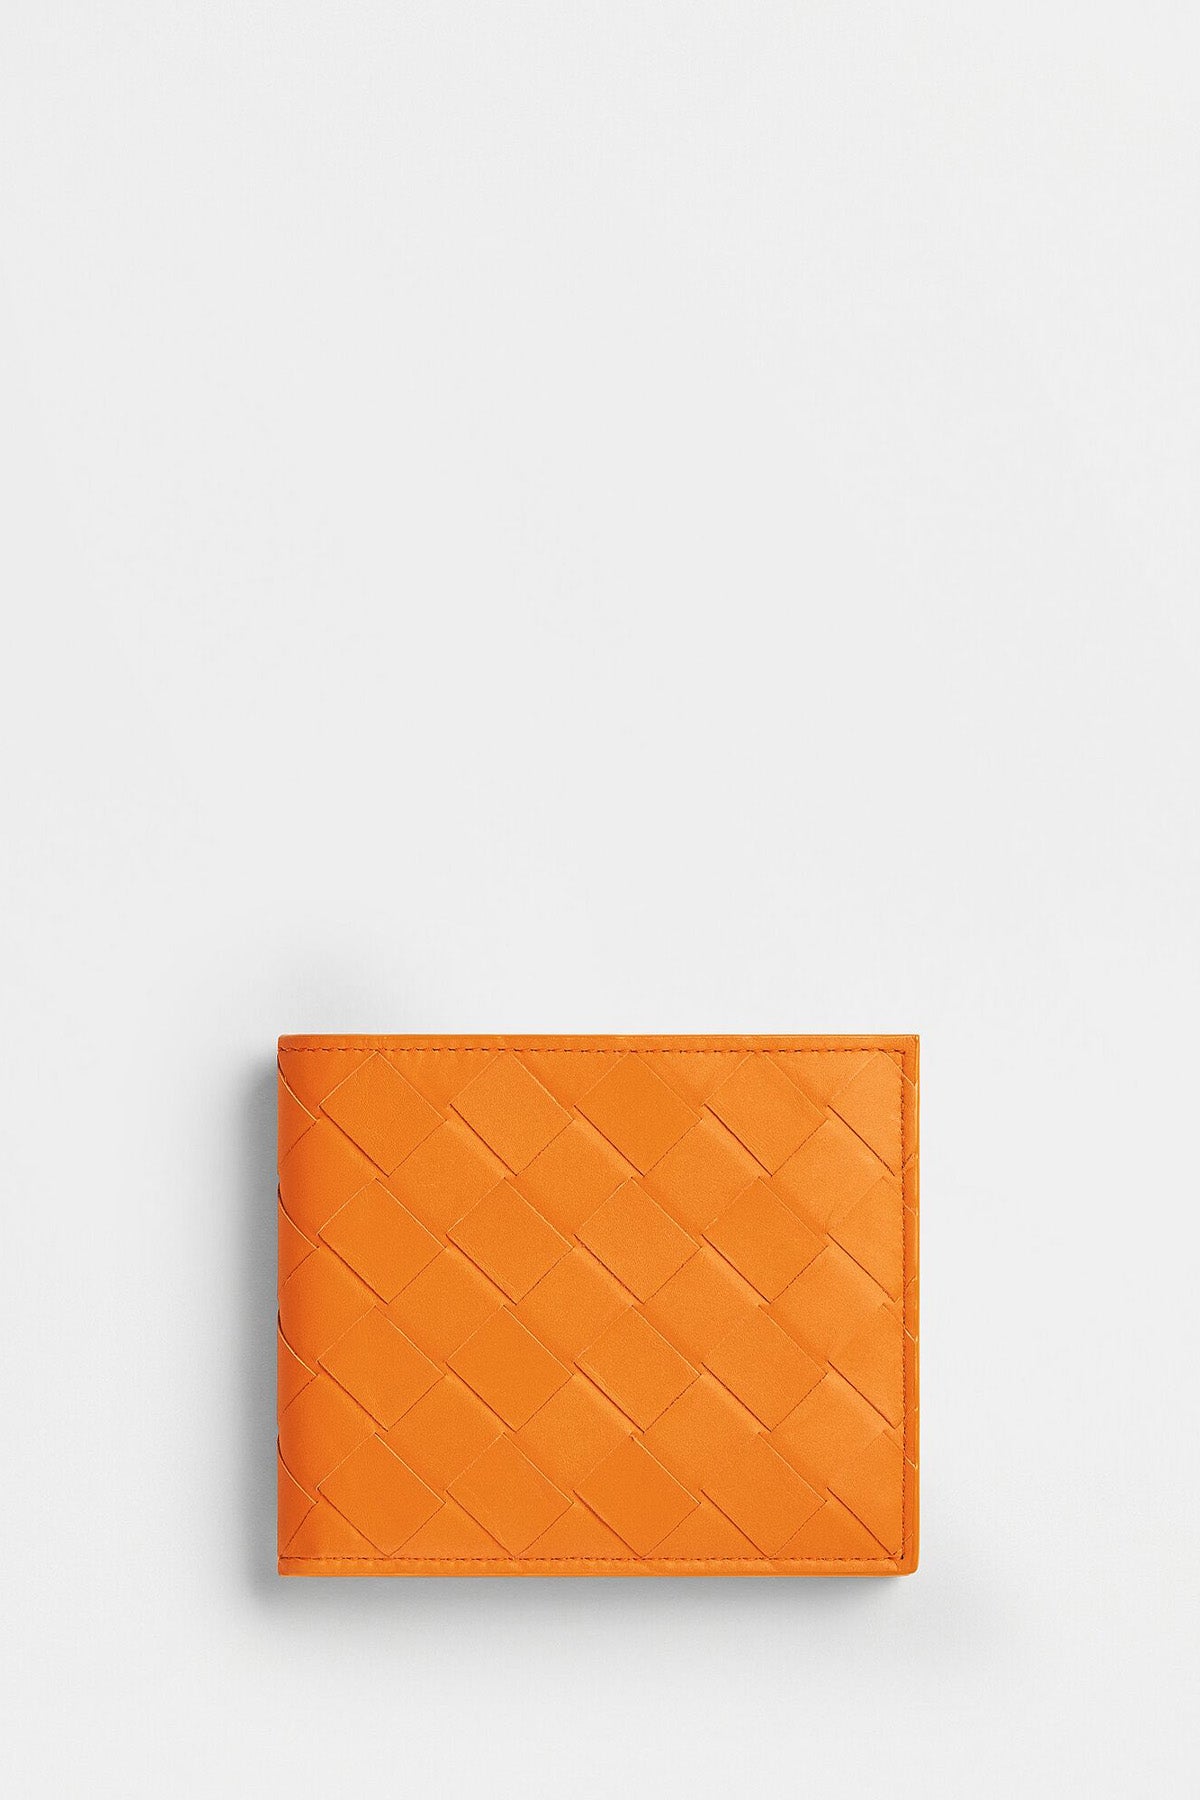 Bottega Veneta | Bi-Fold Wallet